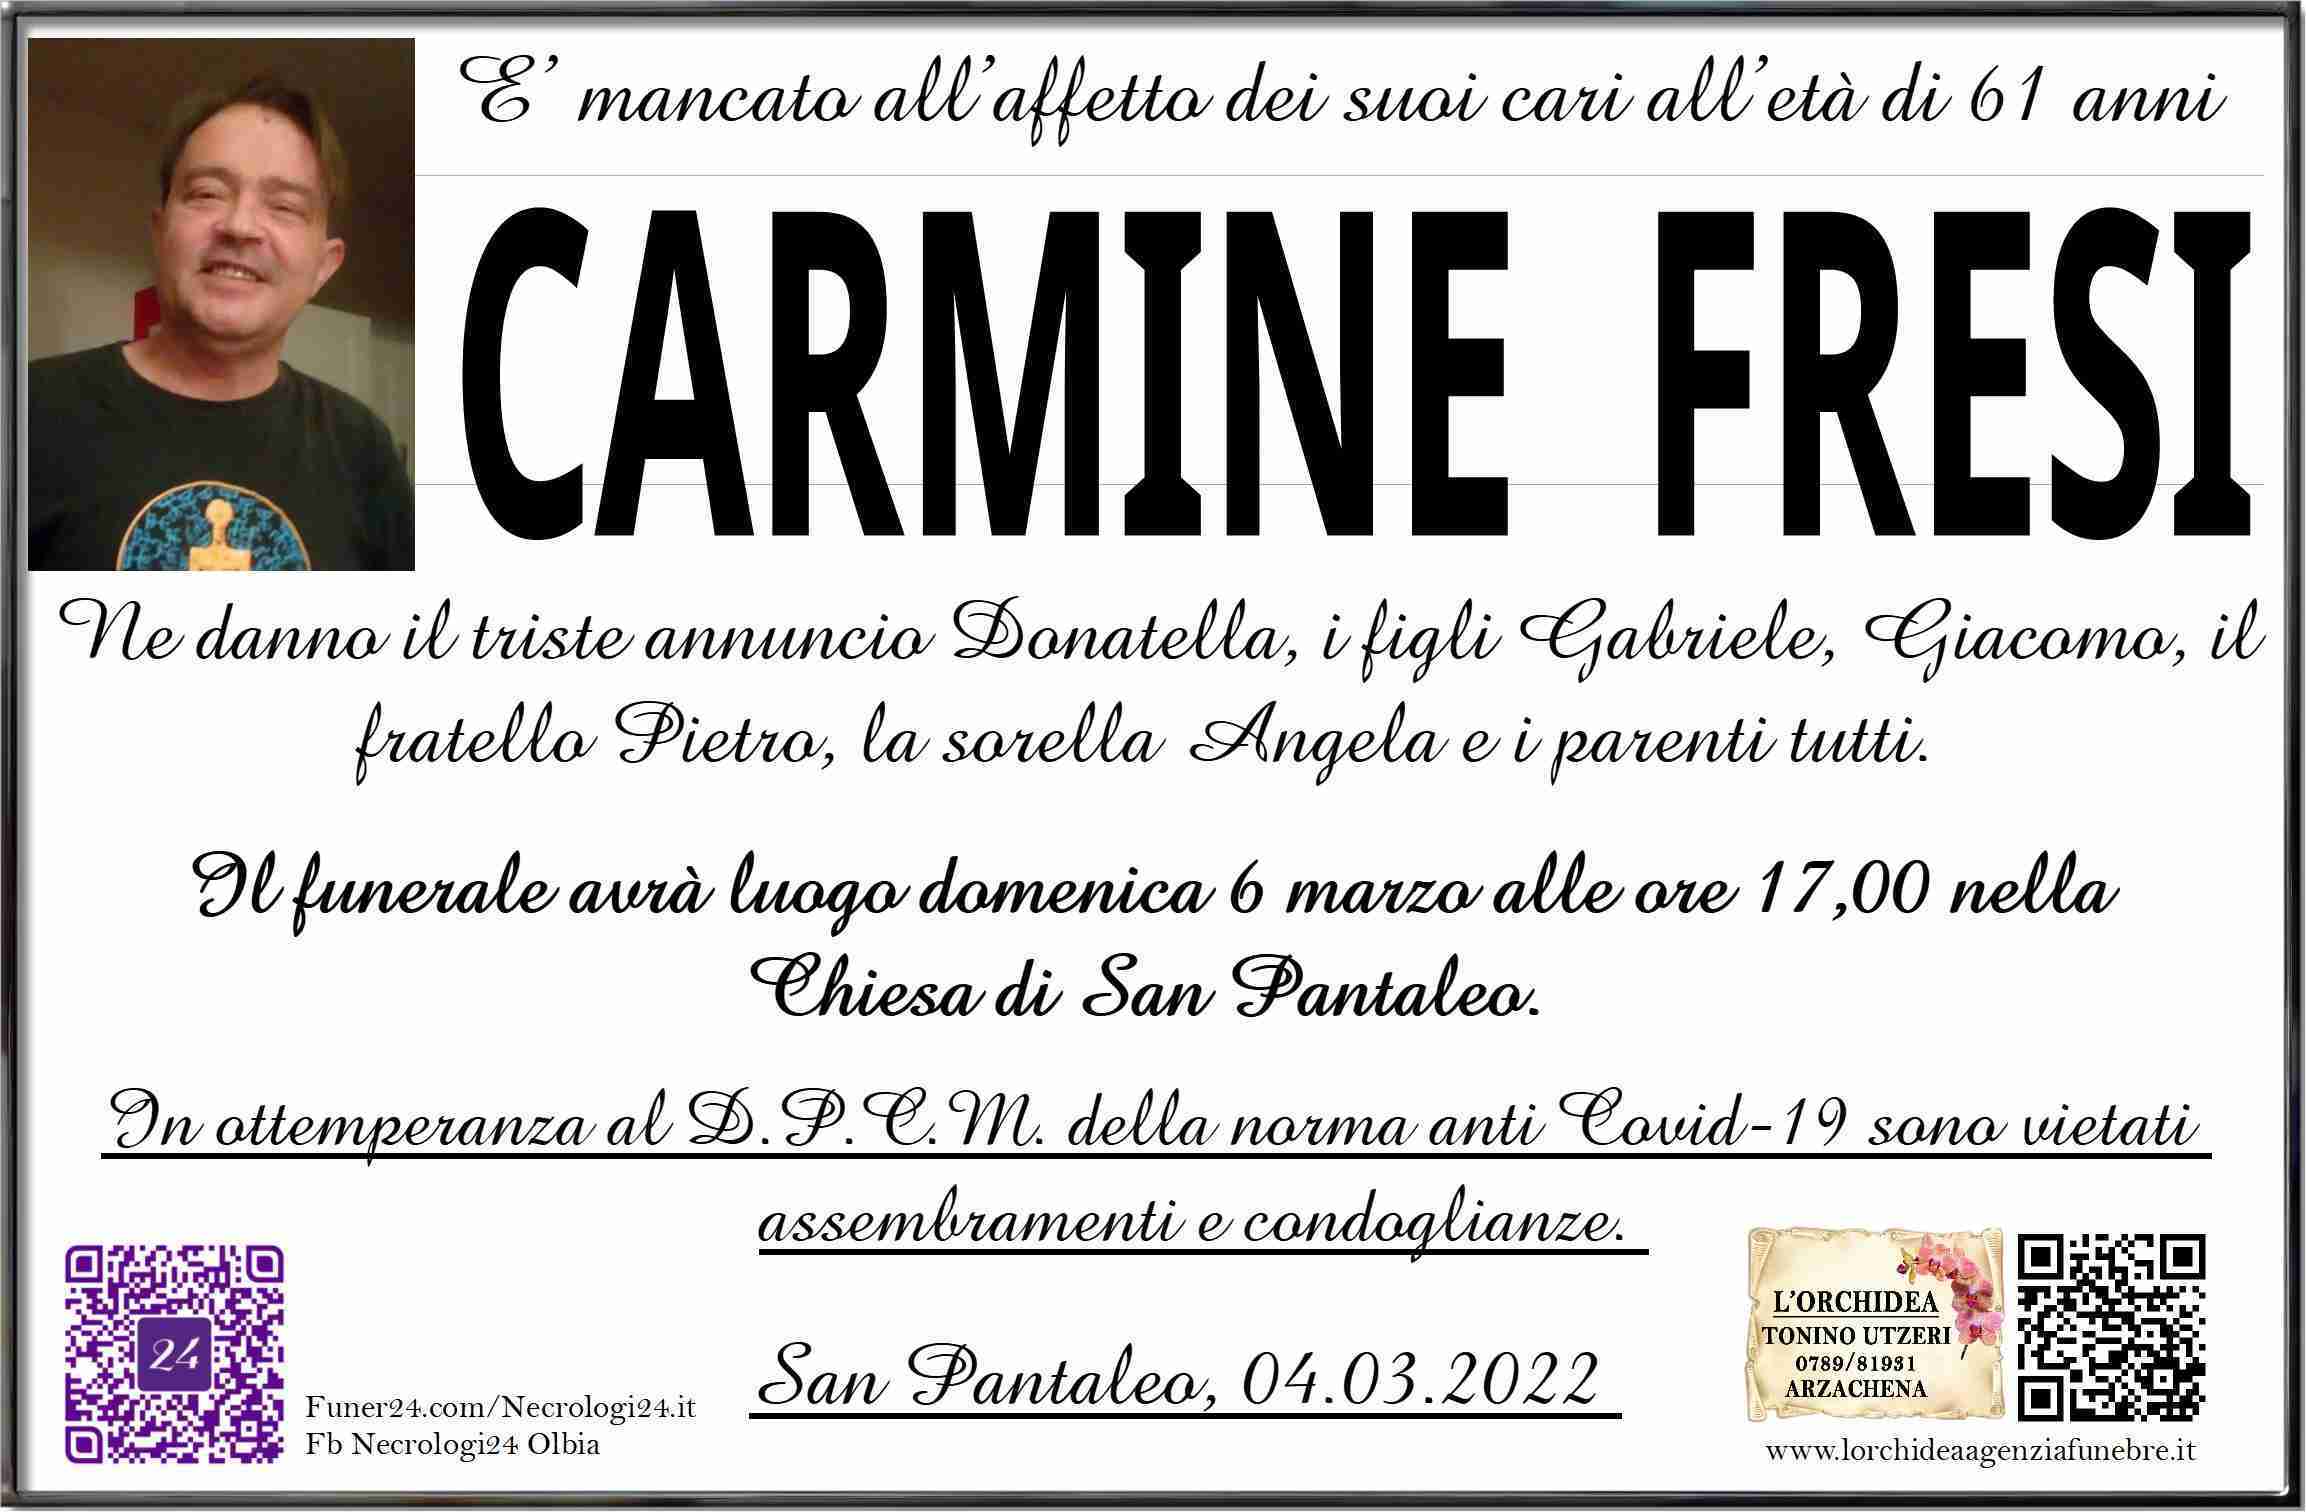 Carmine Fresi